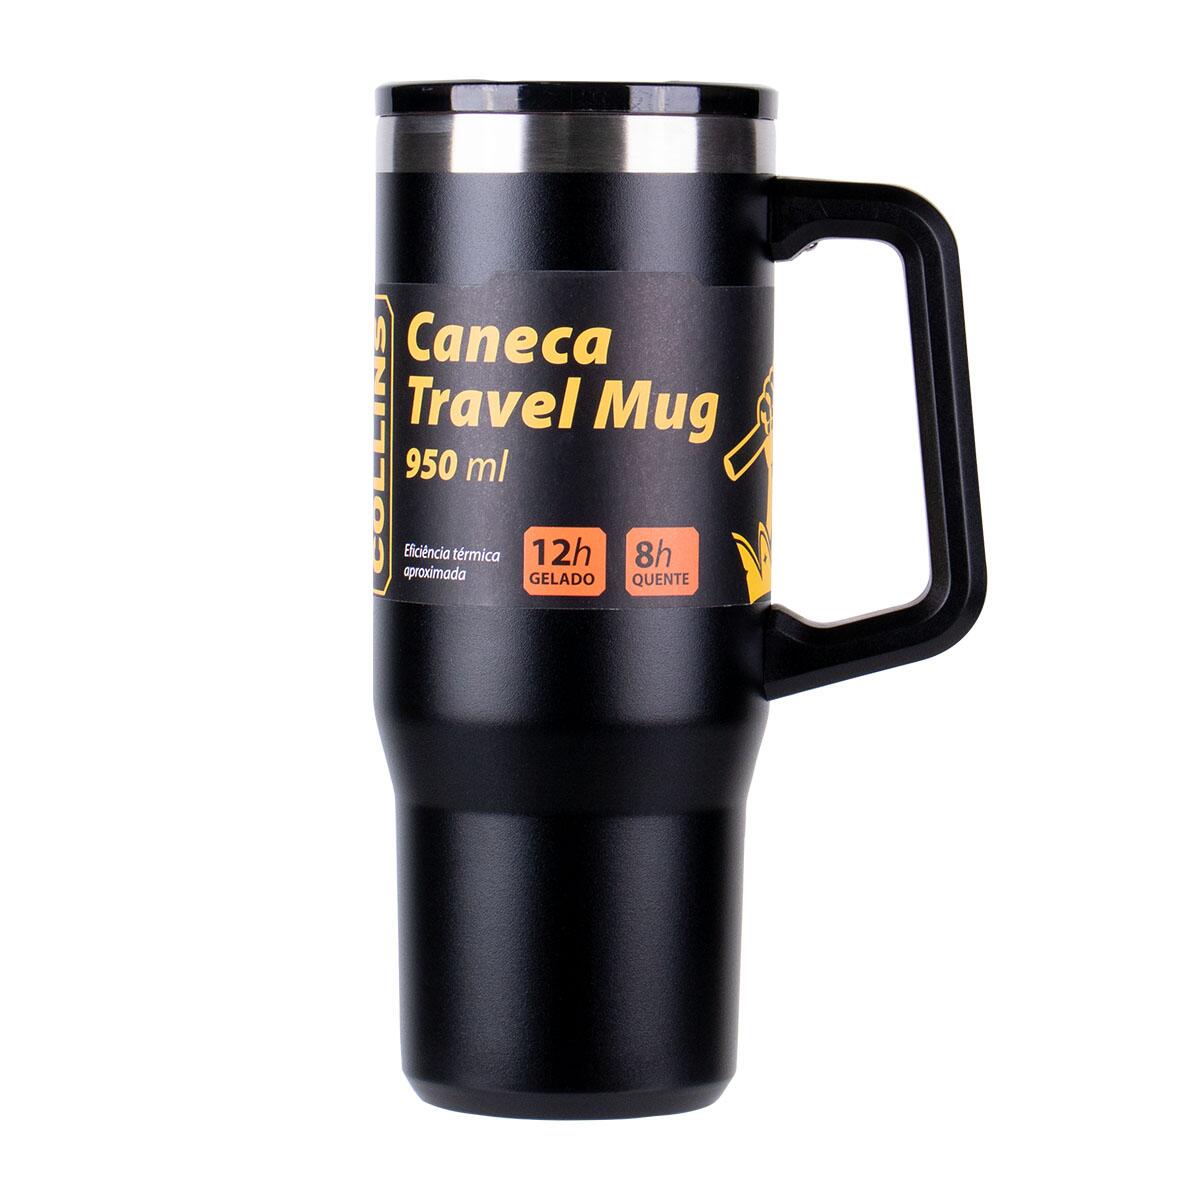 Caneca Travel Mug em Aço Inox com Tampa 950Ml Collins